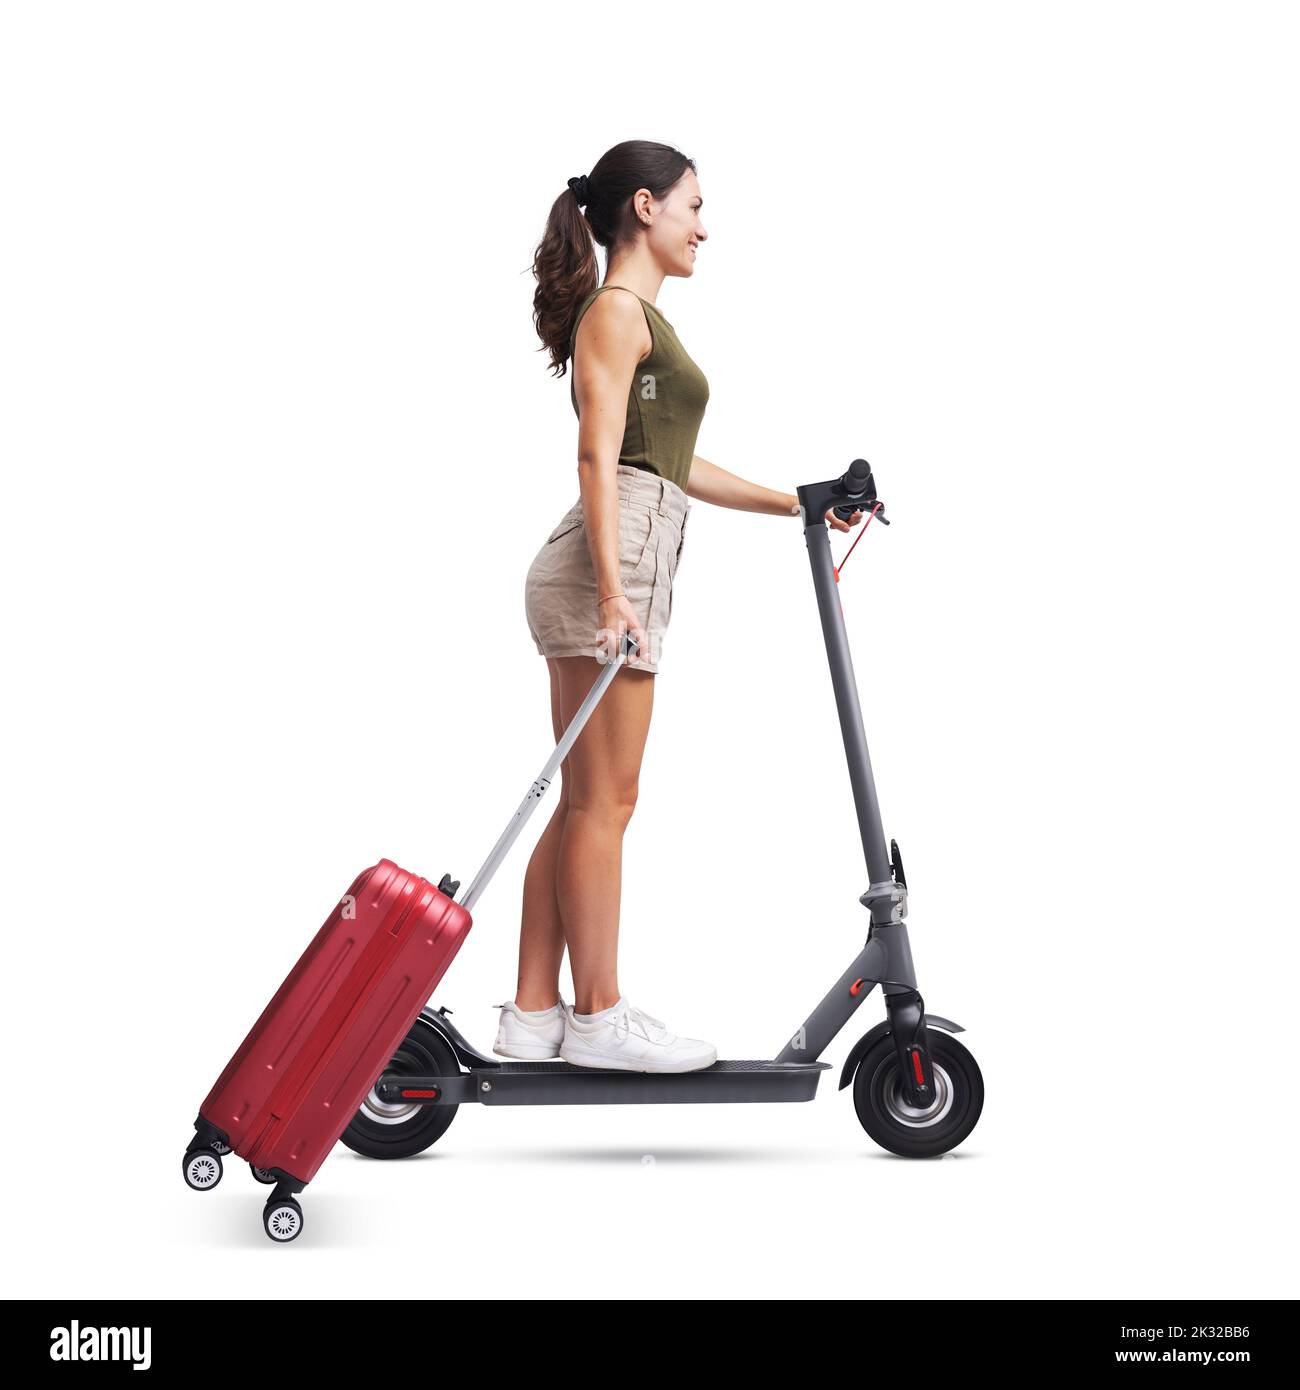 Junge Frau, die eine Trolley-Tasche trägt und einen schnellen Elektroroller fährt, ein Konzept für nachhaltige Mobilität, isoliert auf weißem Hintergrund Stockfoto